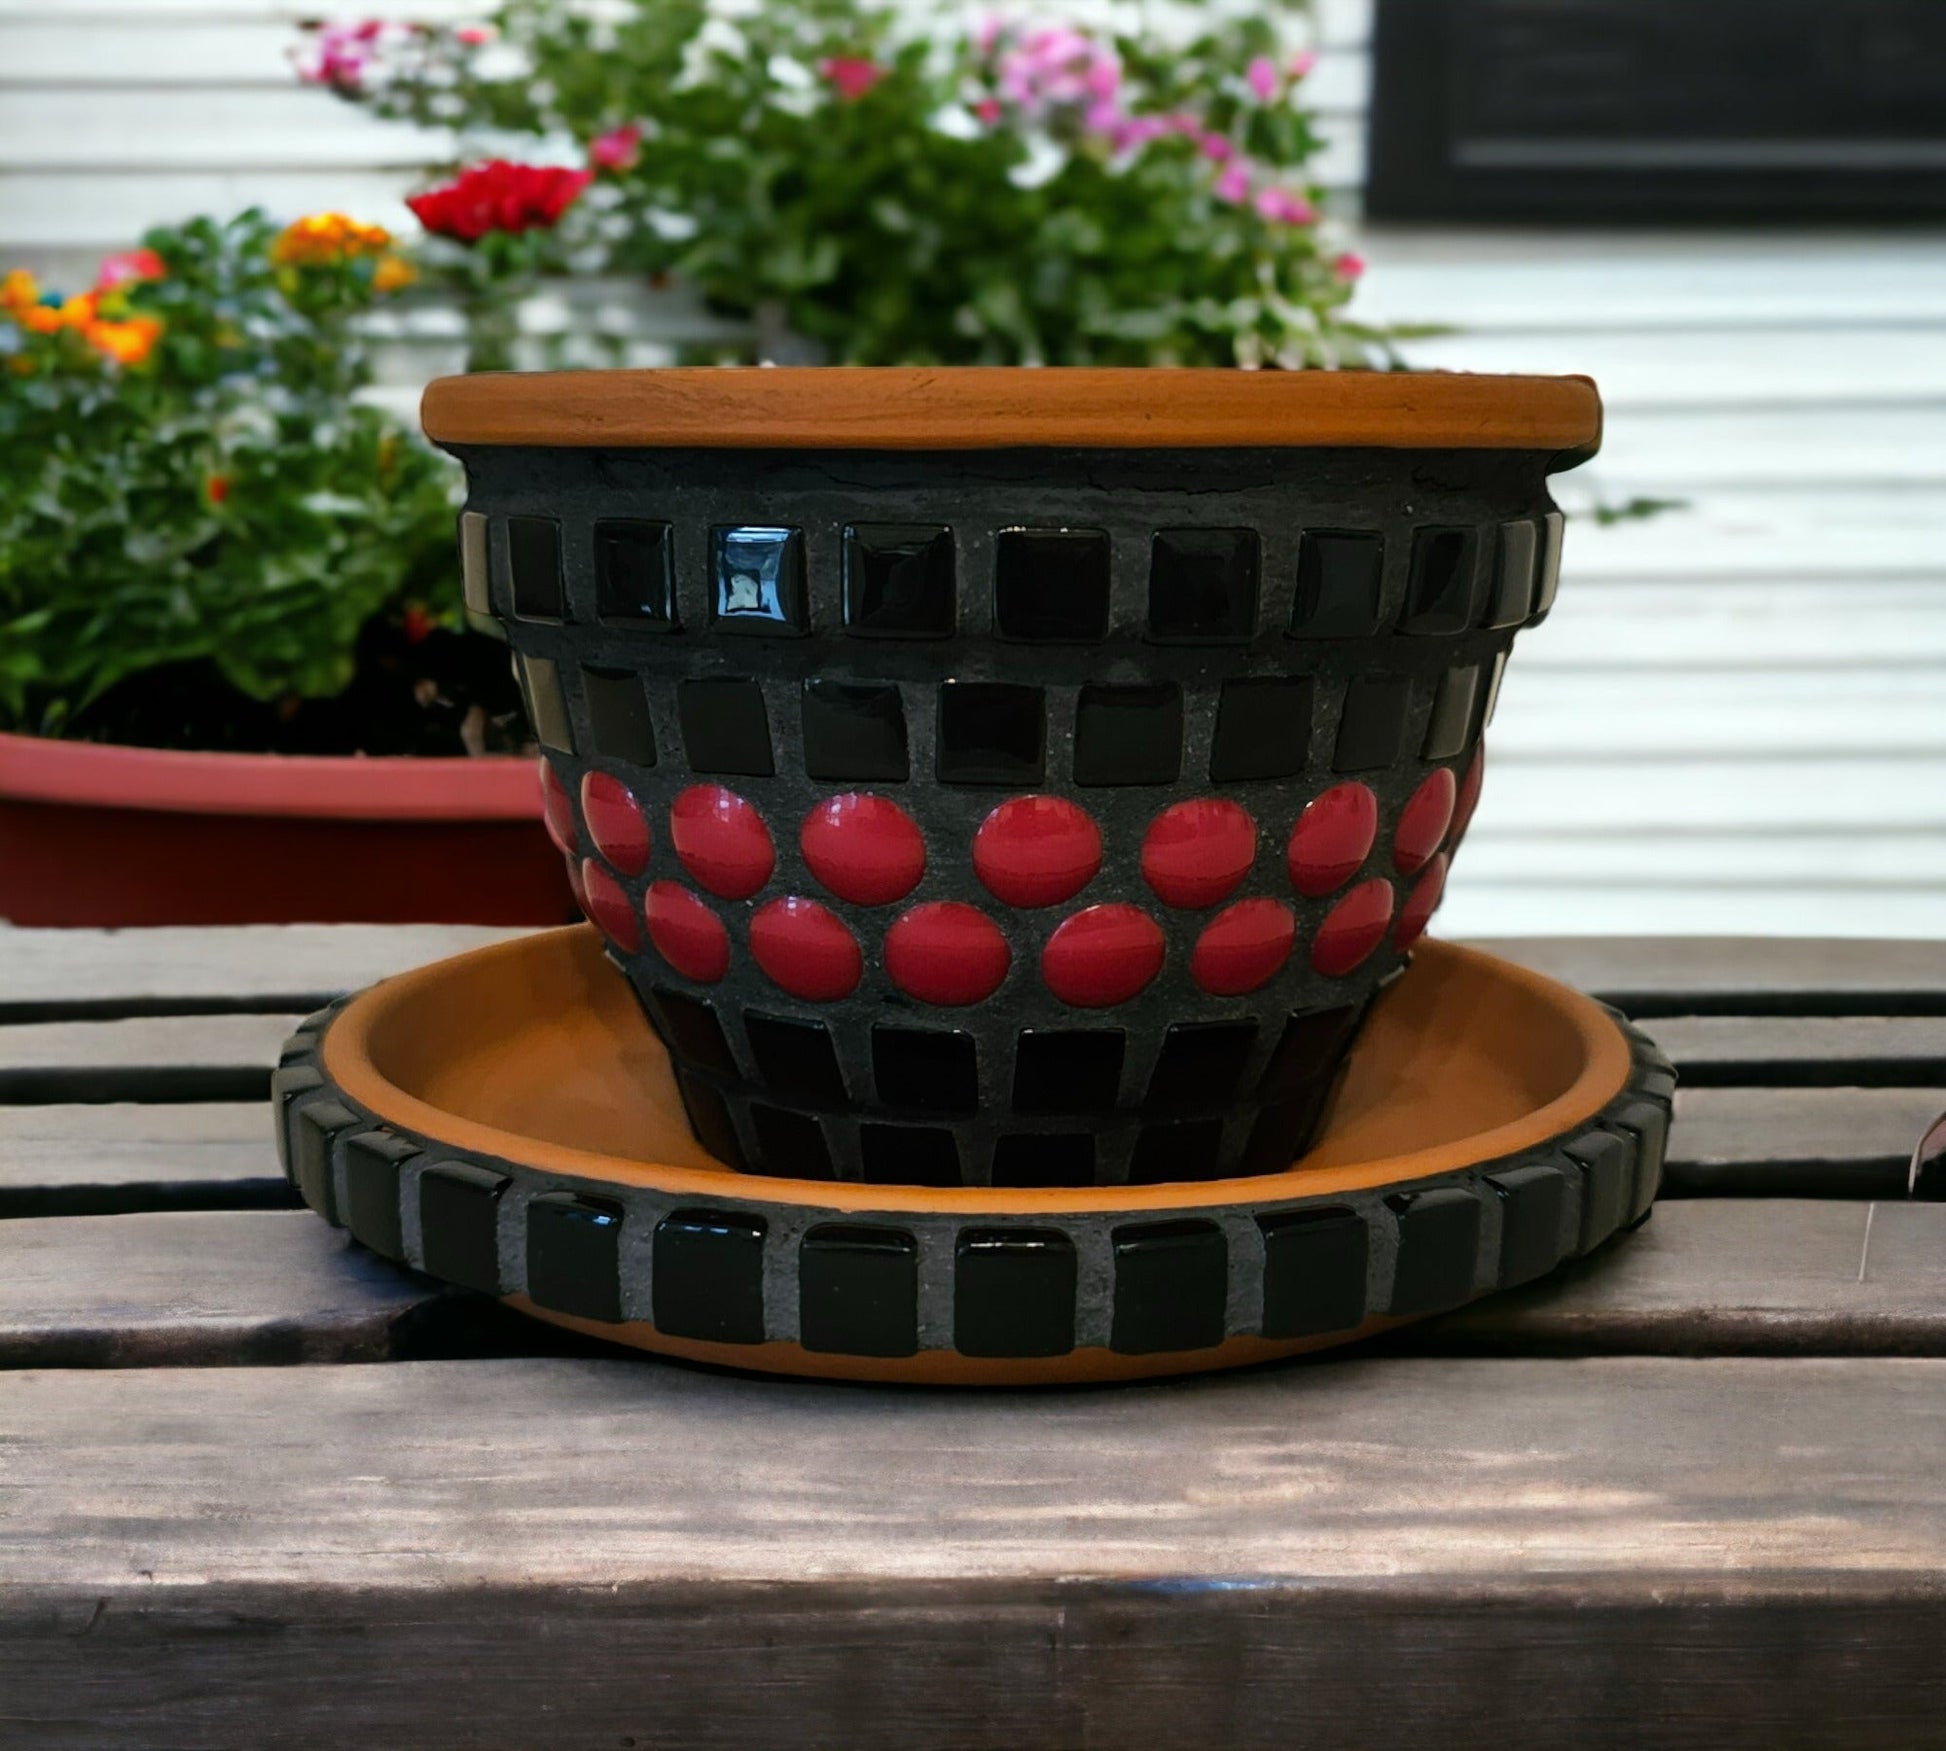 Mosaik Aschenbecher schwarz rot 9 cm - Sturmaschenbecher Gartenaschenbecher - Mosaikkasten aschenbecher Aschenbecher mit Deckel